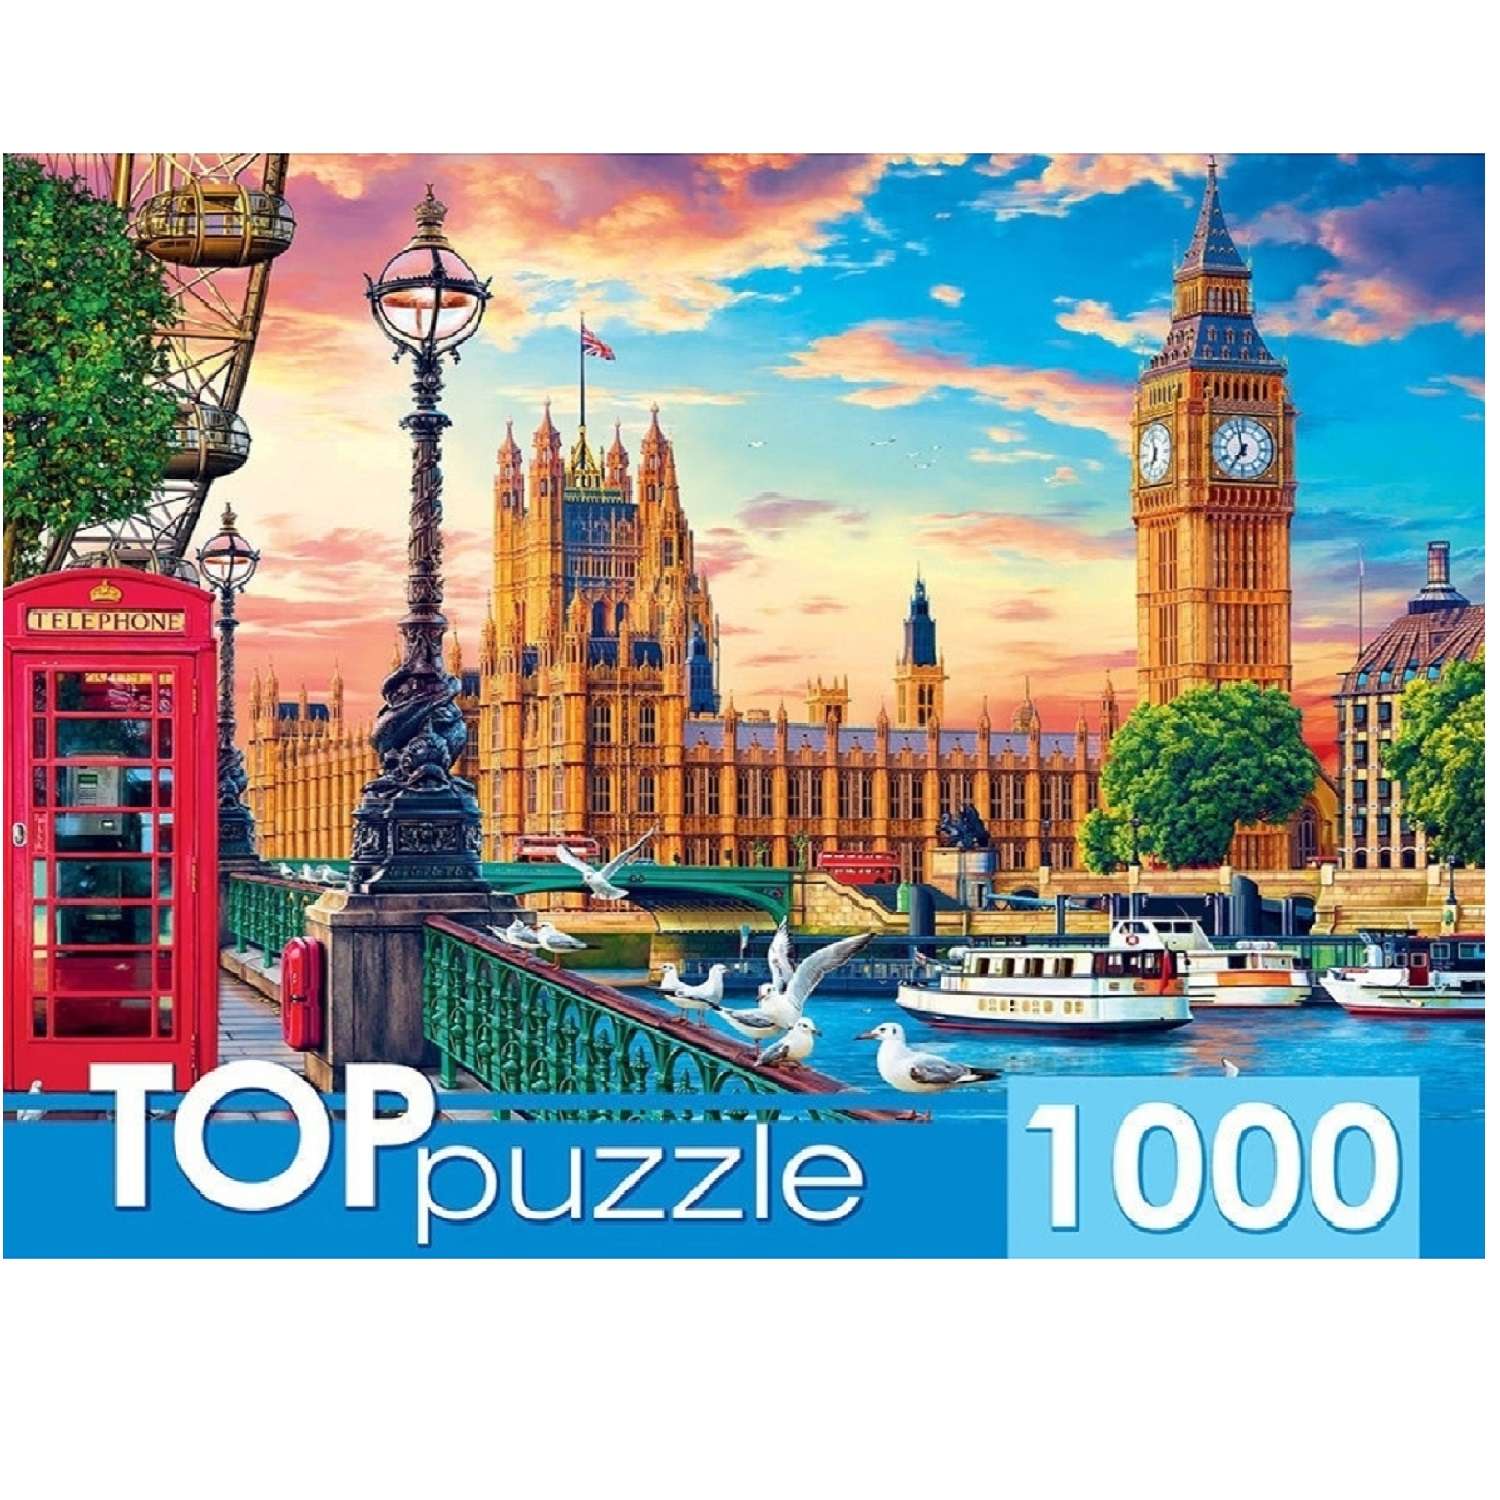 TOPpuzzle. Пазлы. Рыжий кот 1000 элементов. Великобритания. Лондон - фото 1